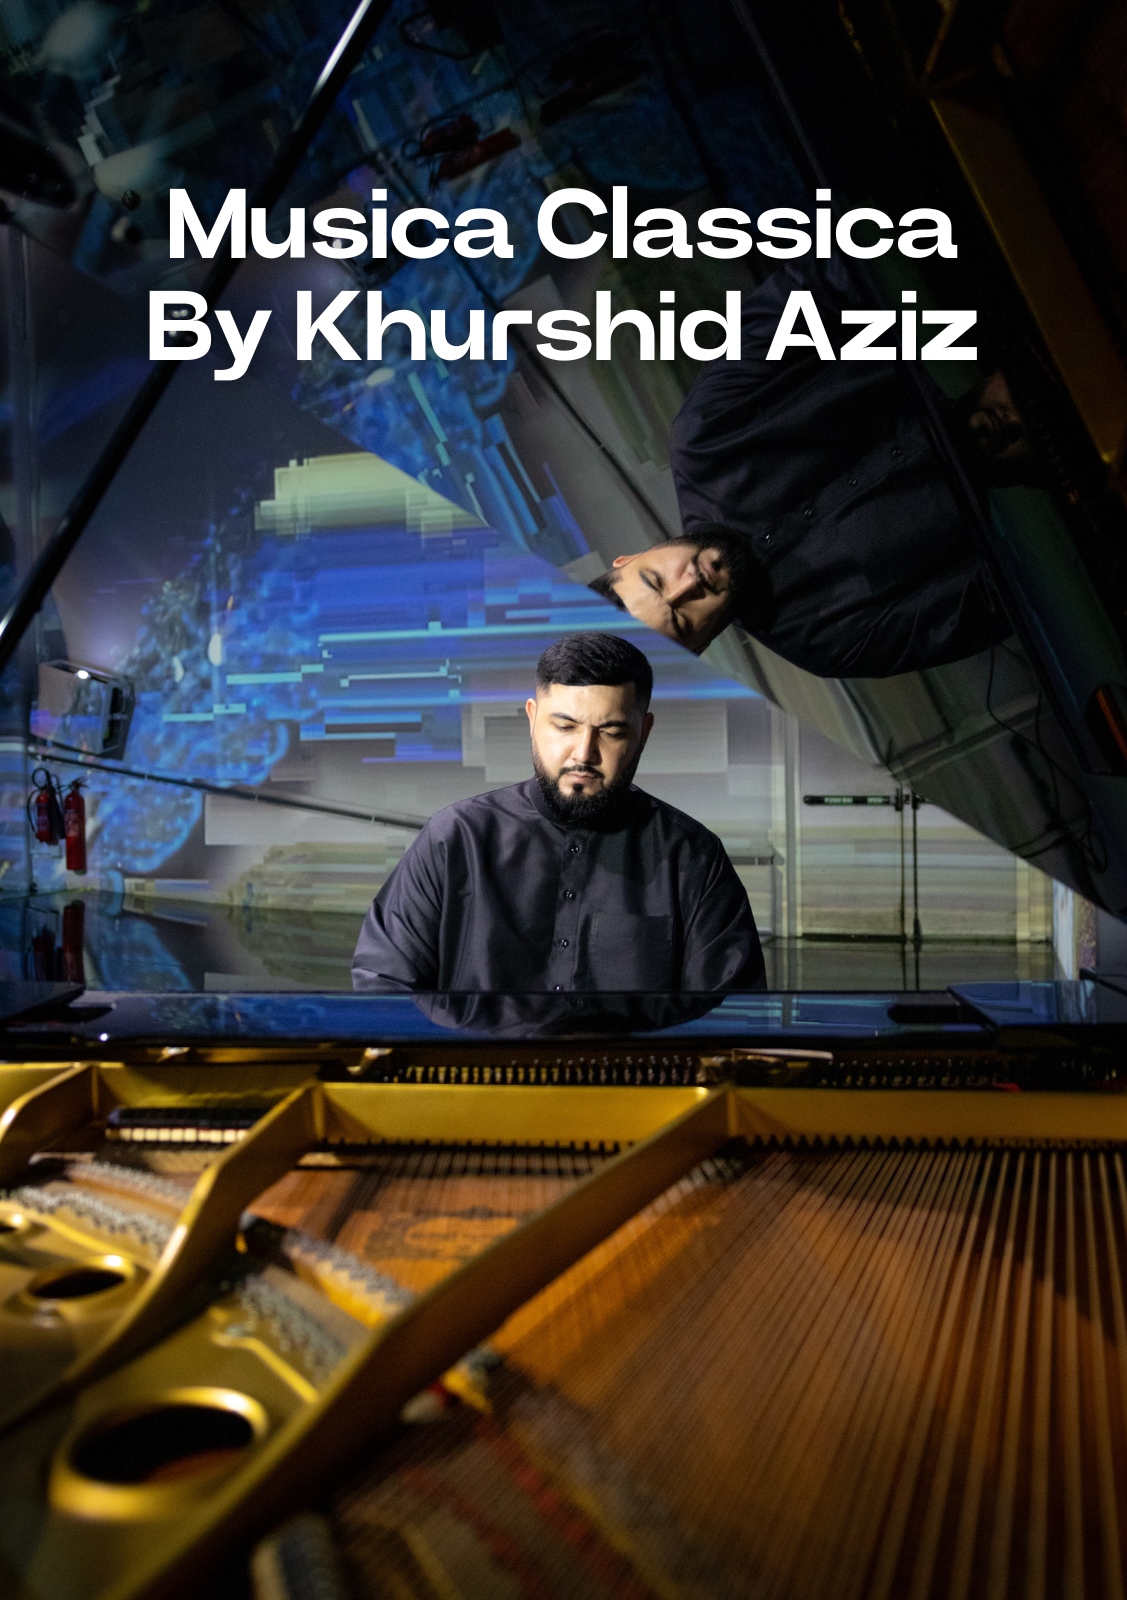 Musica Classica by Khurshid Aziz